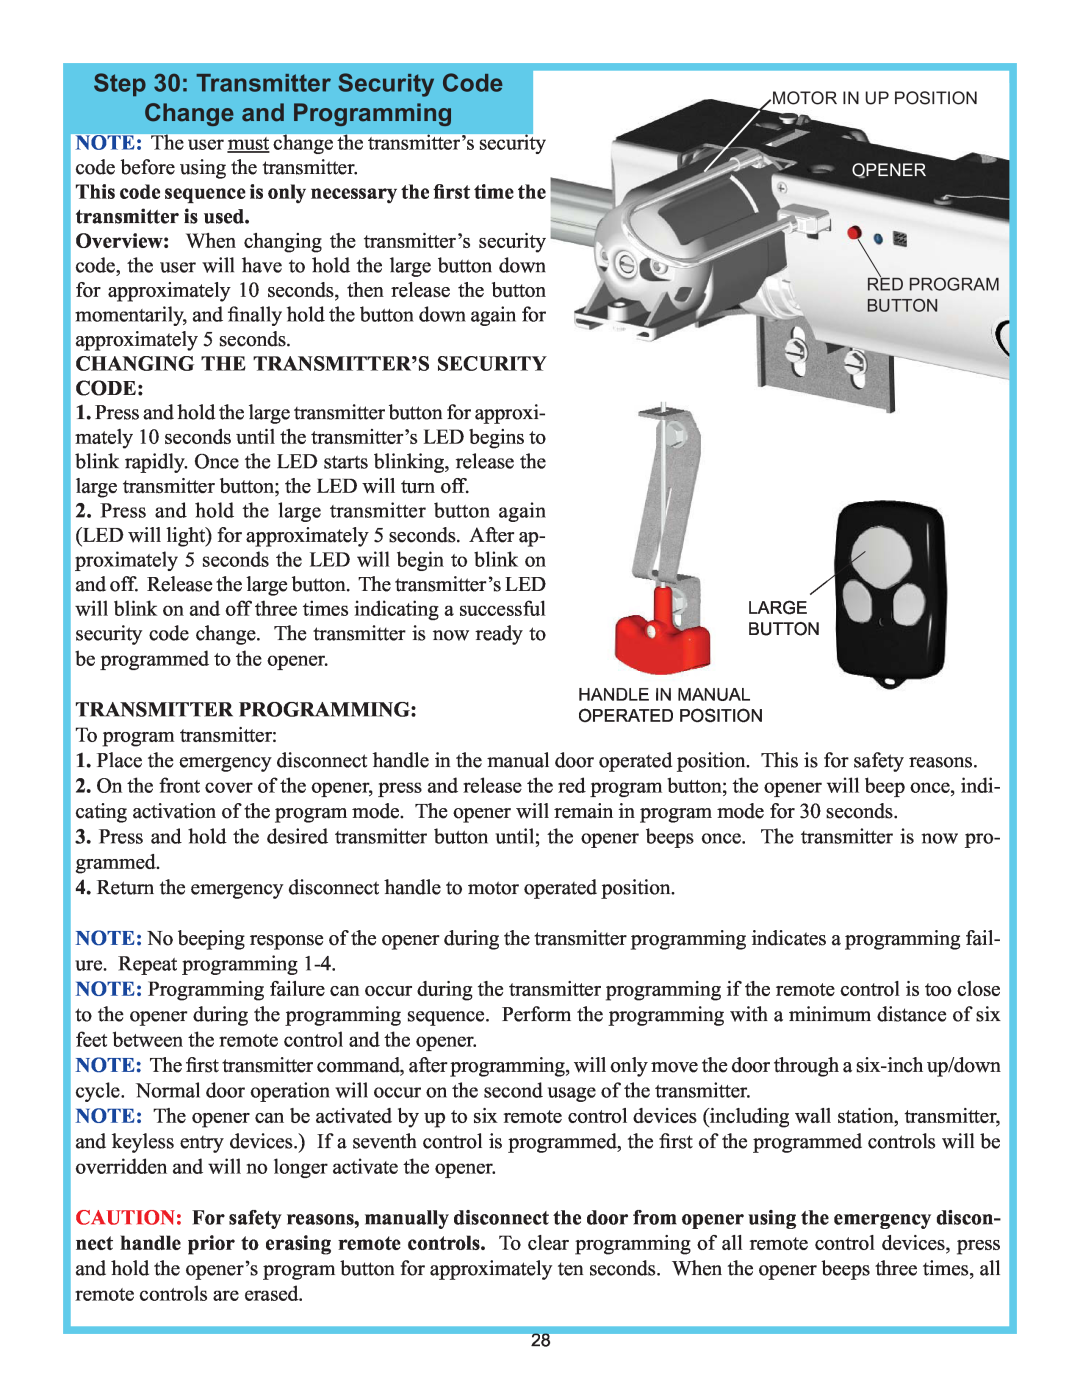 Wayne-Dalton 3982 Transmitter Security Code, Change and Programming, Changing The Transmitter’S Security Code 